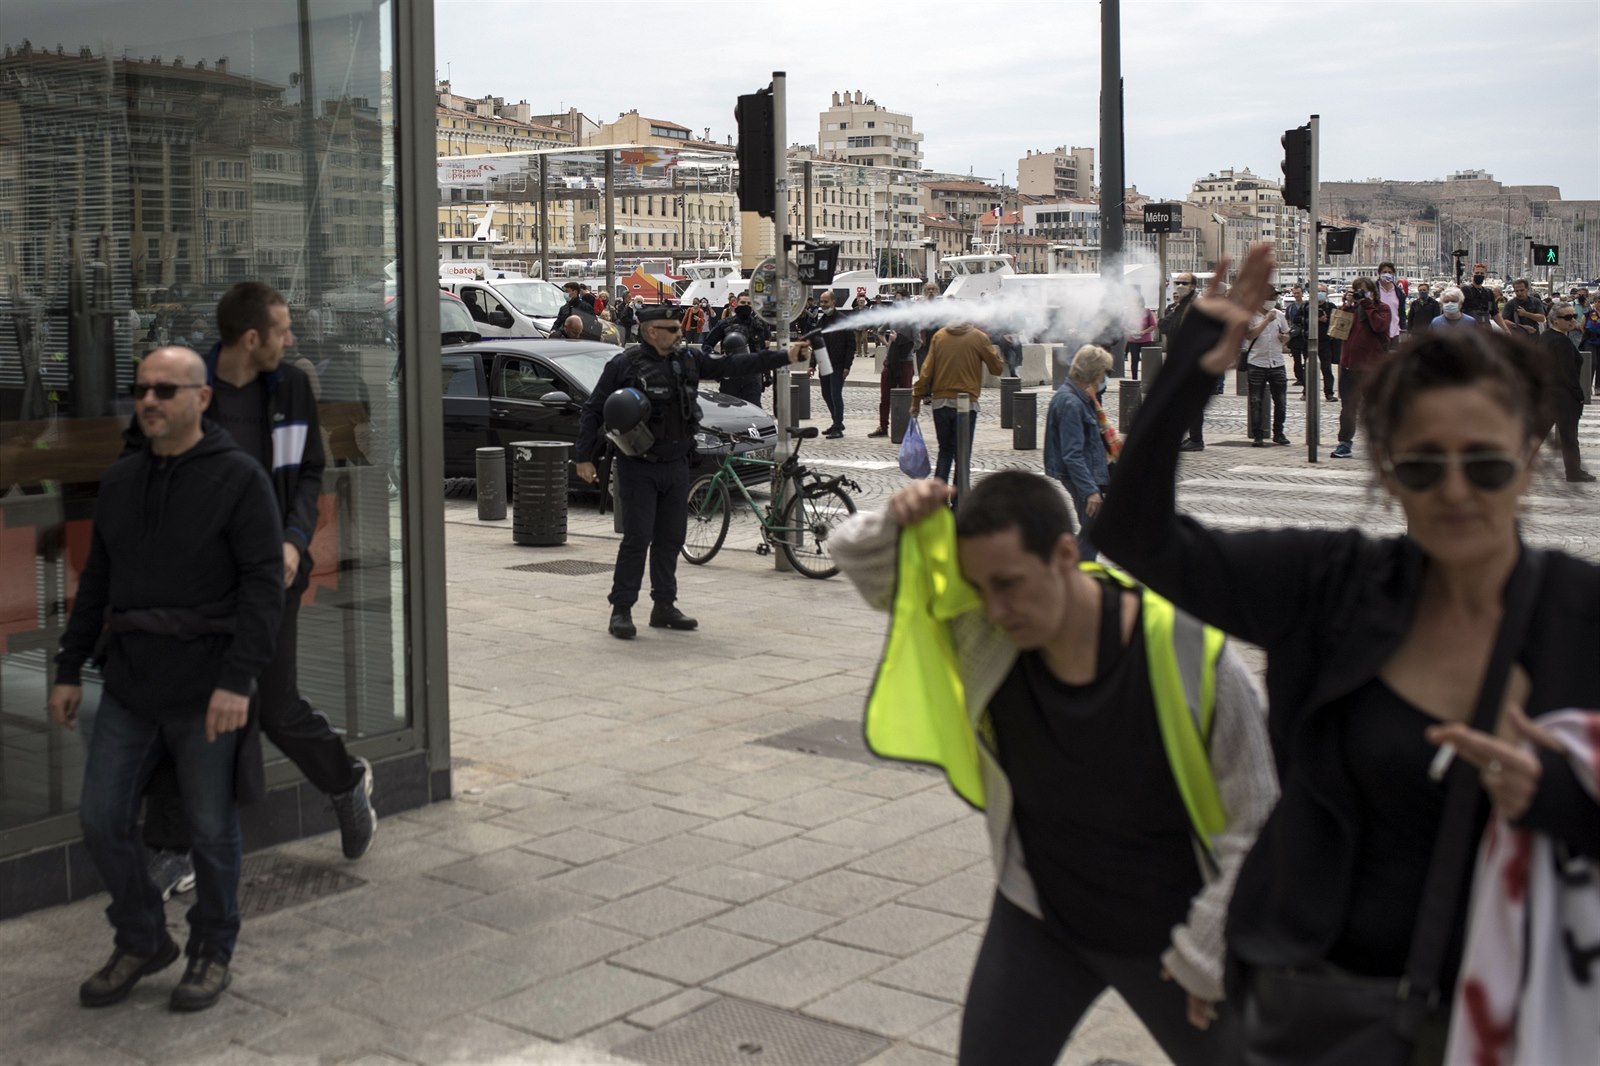 Ve Francii navzdory zákazu opět demonstrovaly žluté vesty. Policisté  rozdali desítky pokut | Svět | Lidovky.cz